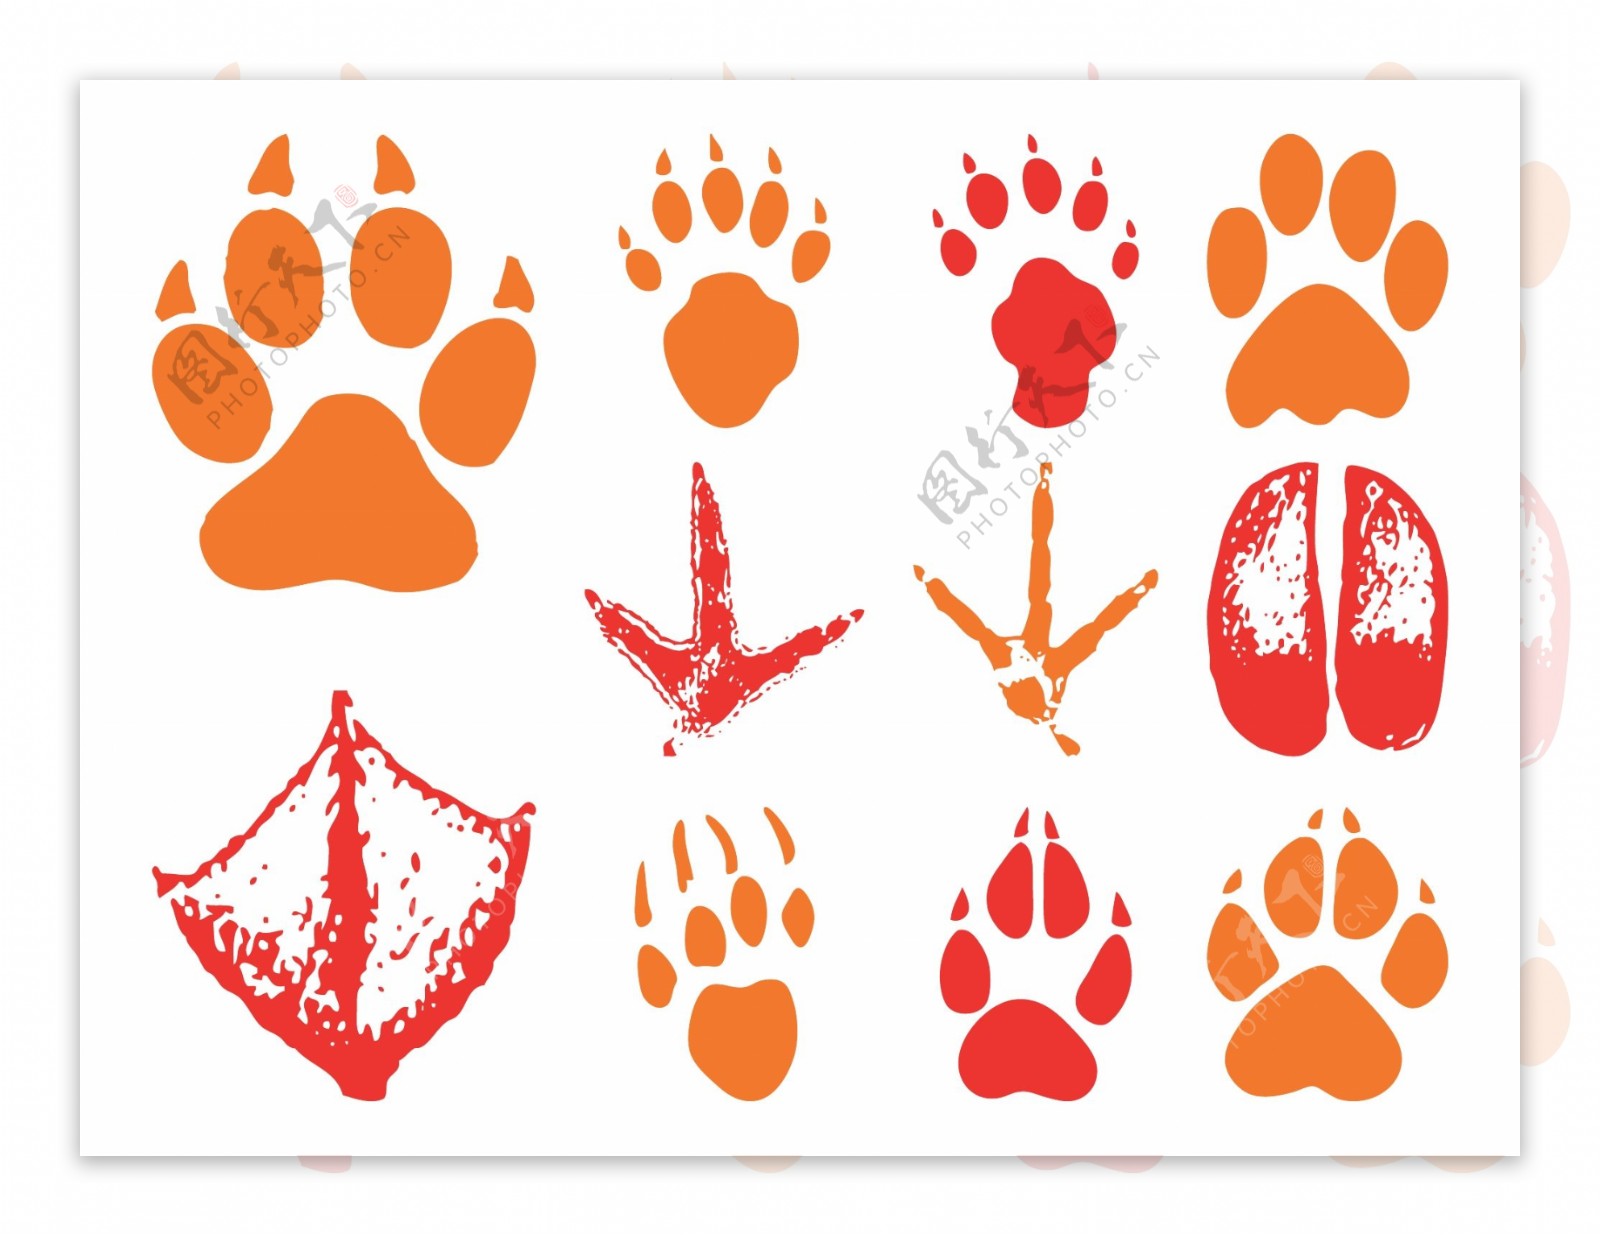 动物脚印图片名称-图库-五毛网